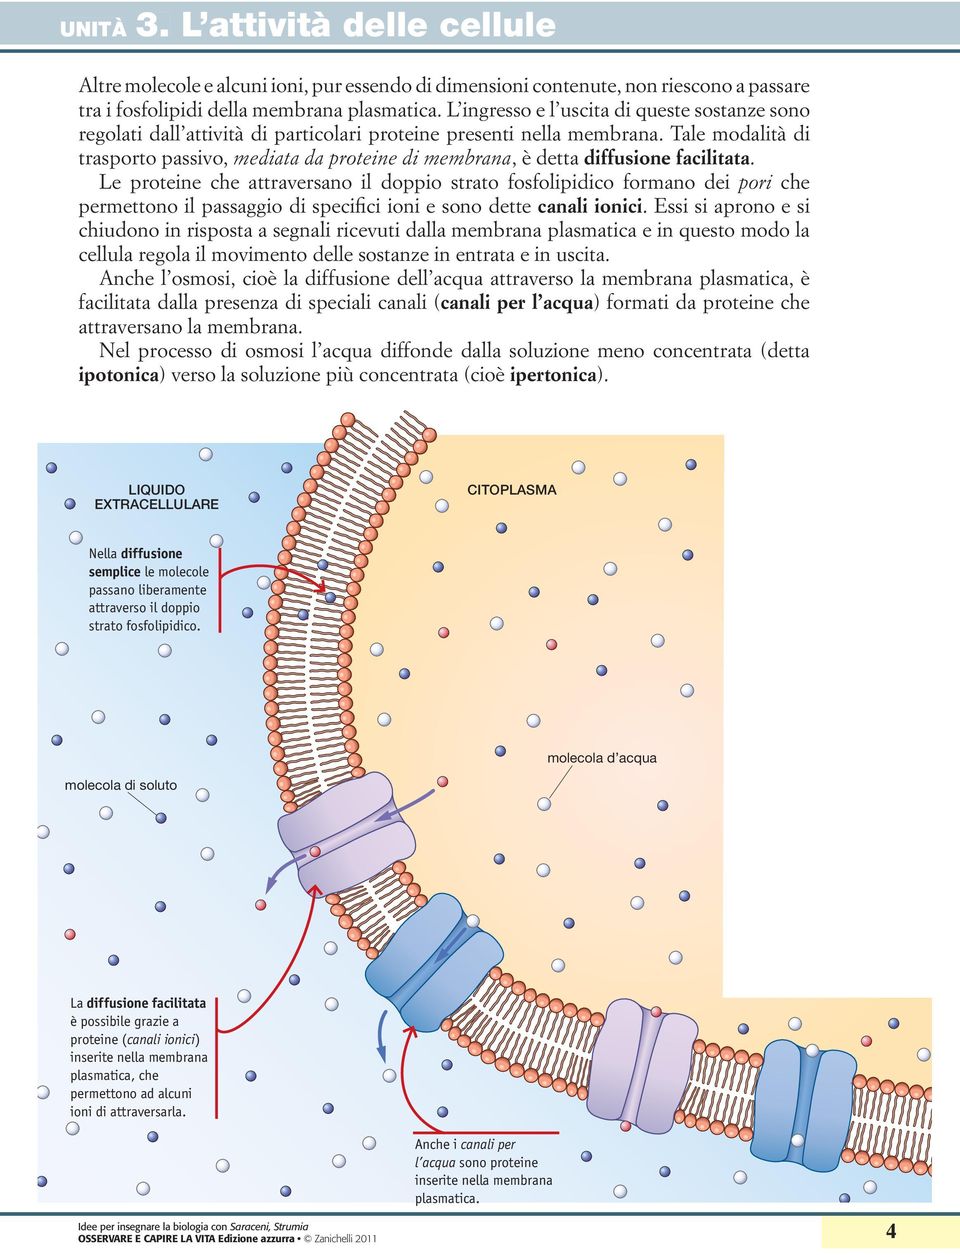 Tale modalità di trasporto passivo, mediata da proteine di membrana, è detta diffusione facilitata.